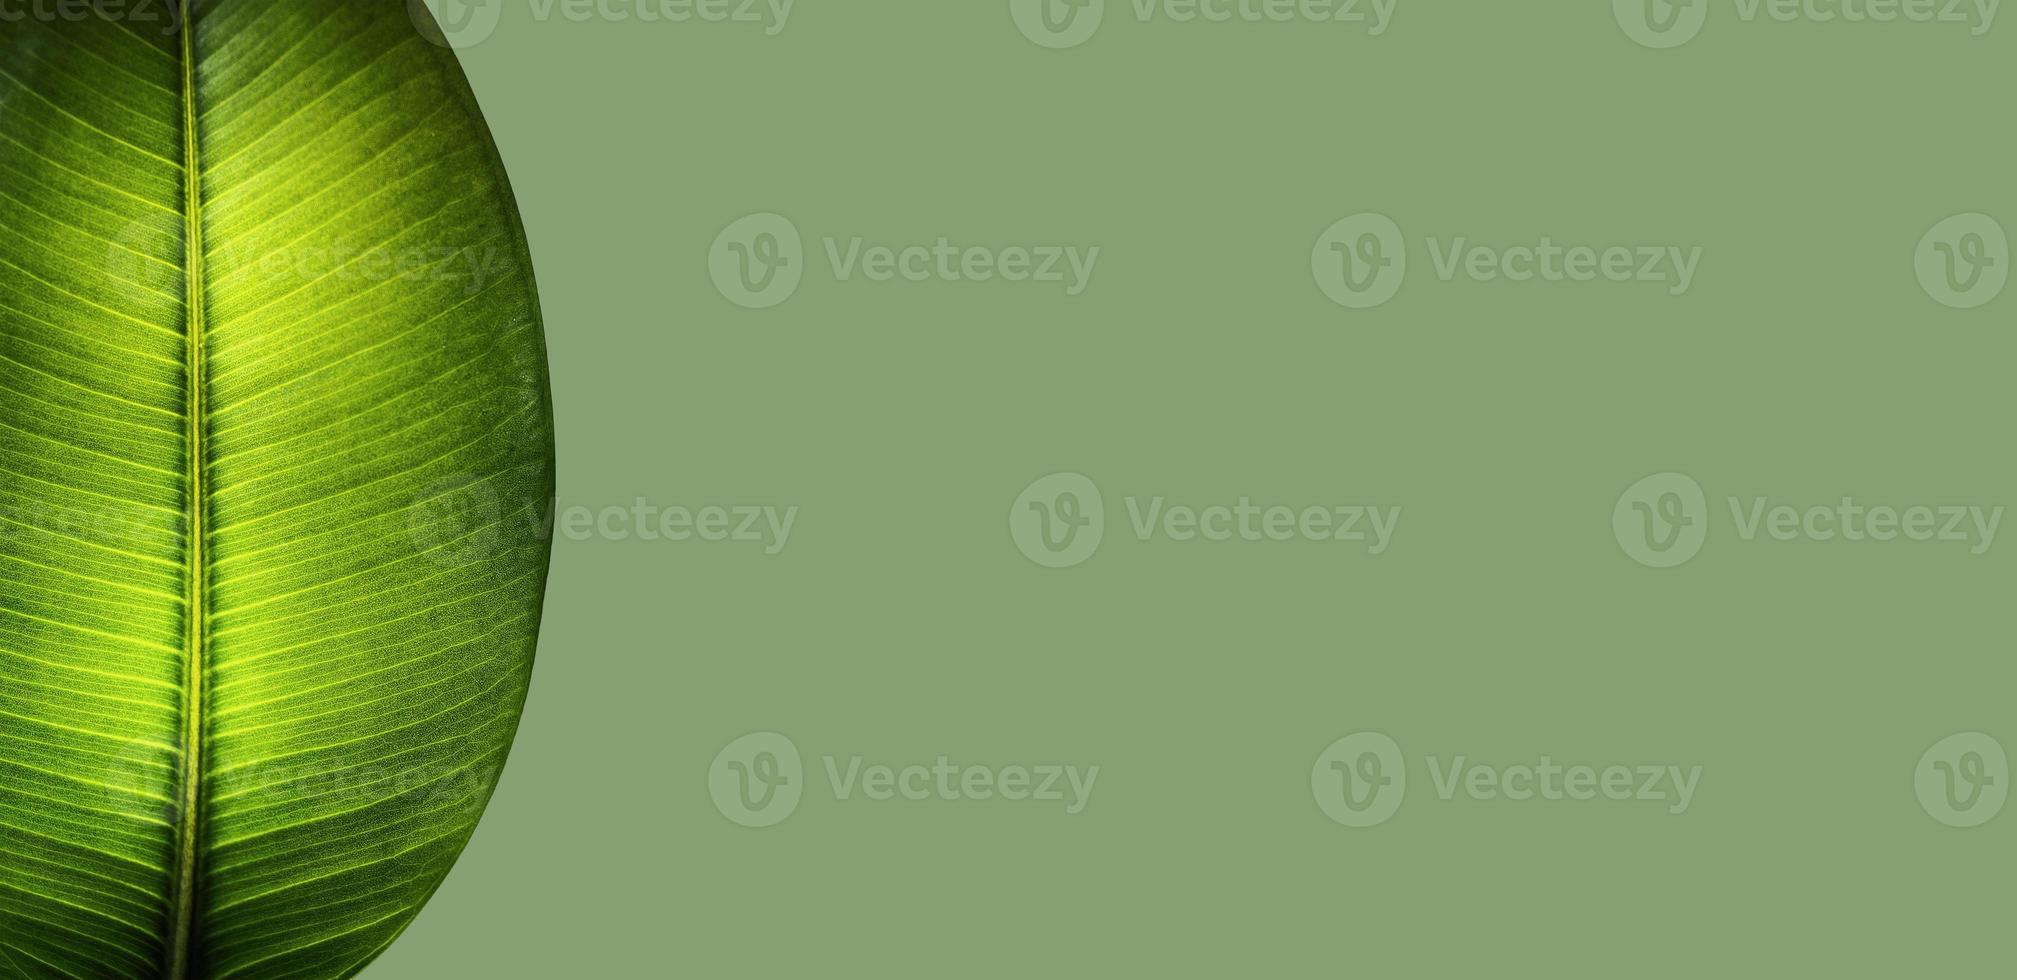 banner com uma folha meio transparente de ficus elastica indiana no jardim tropical em fundo verde sólido com espaço de cópia para texto, close-up, detalhes foto